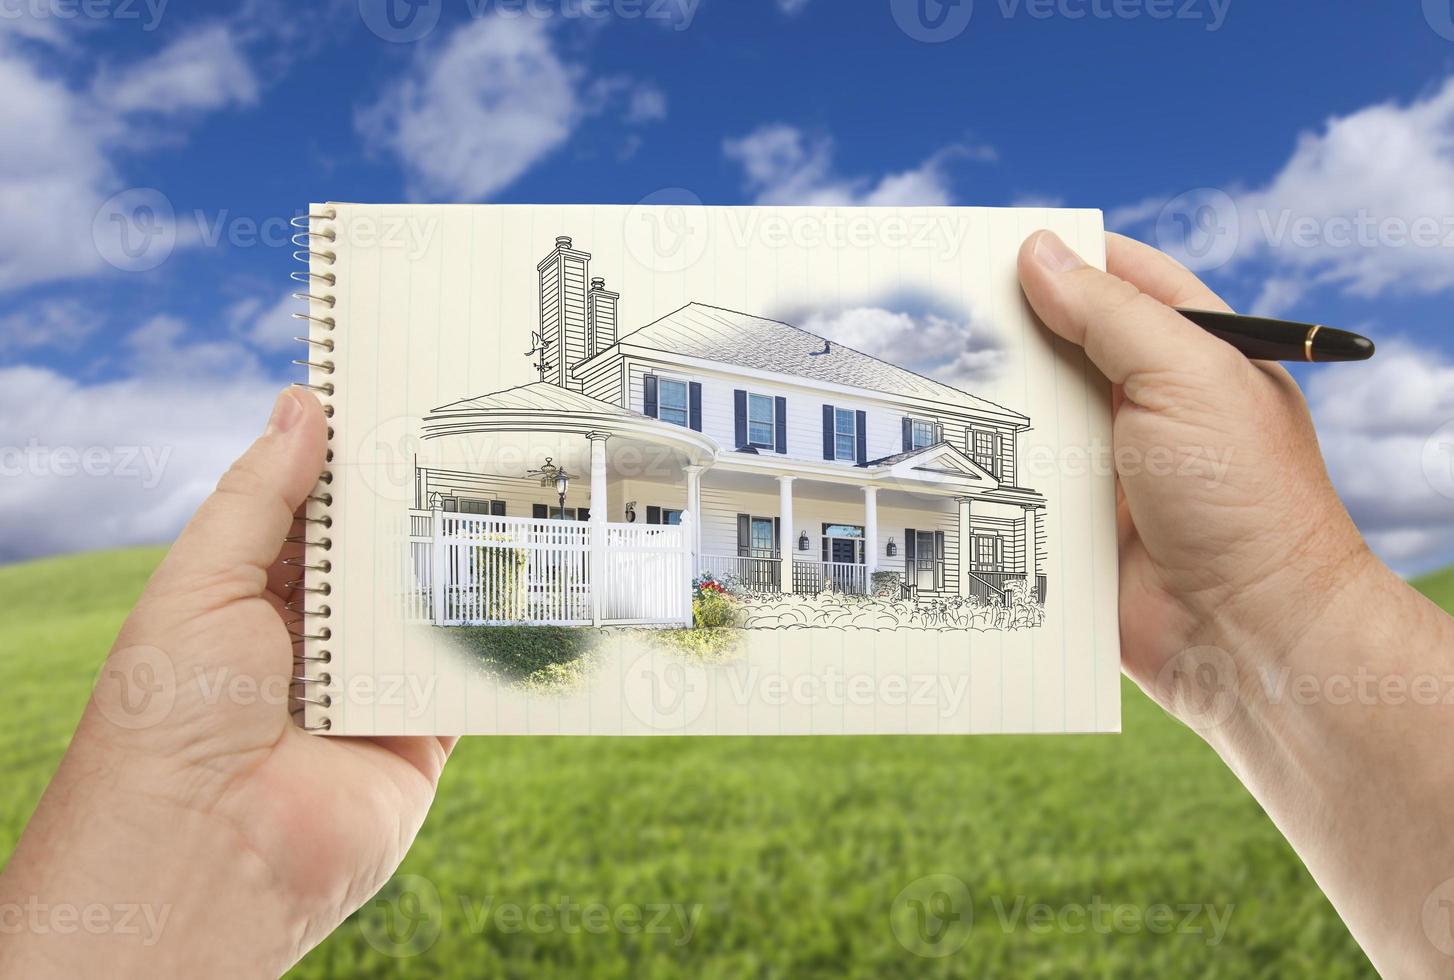 handen Holding papier met huis tekening over- leeg gras veld- foto